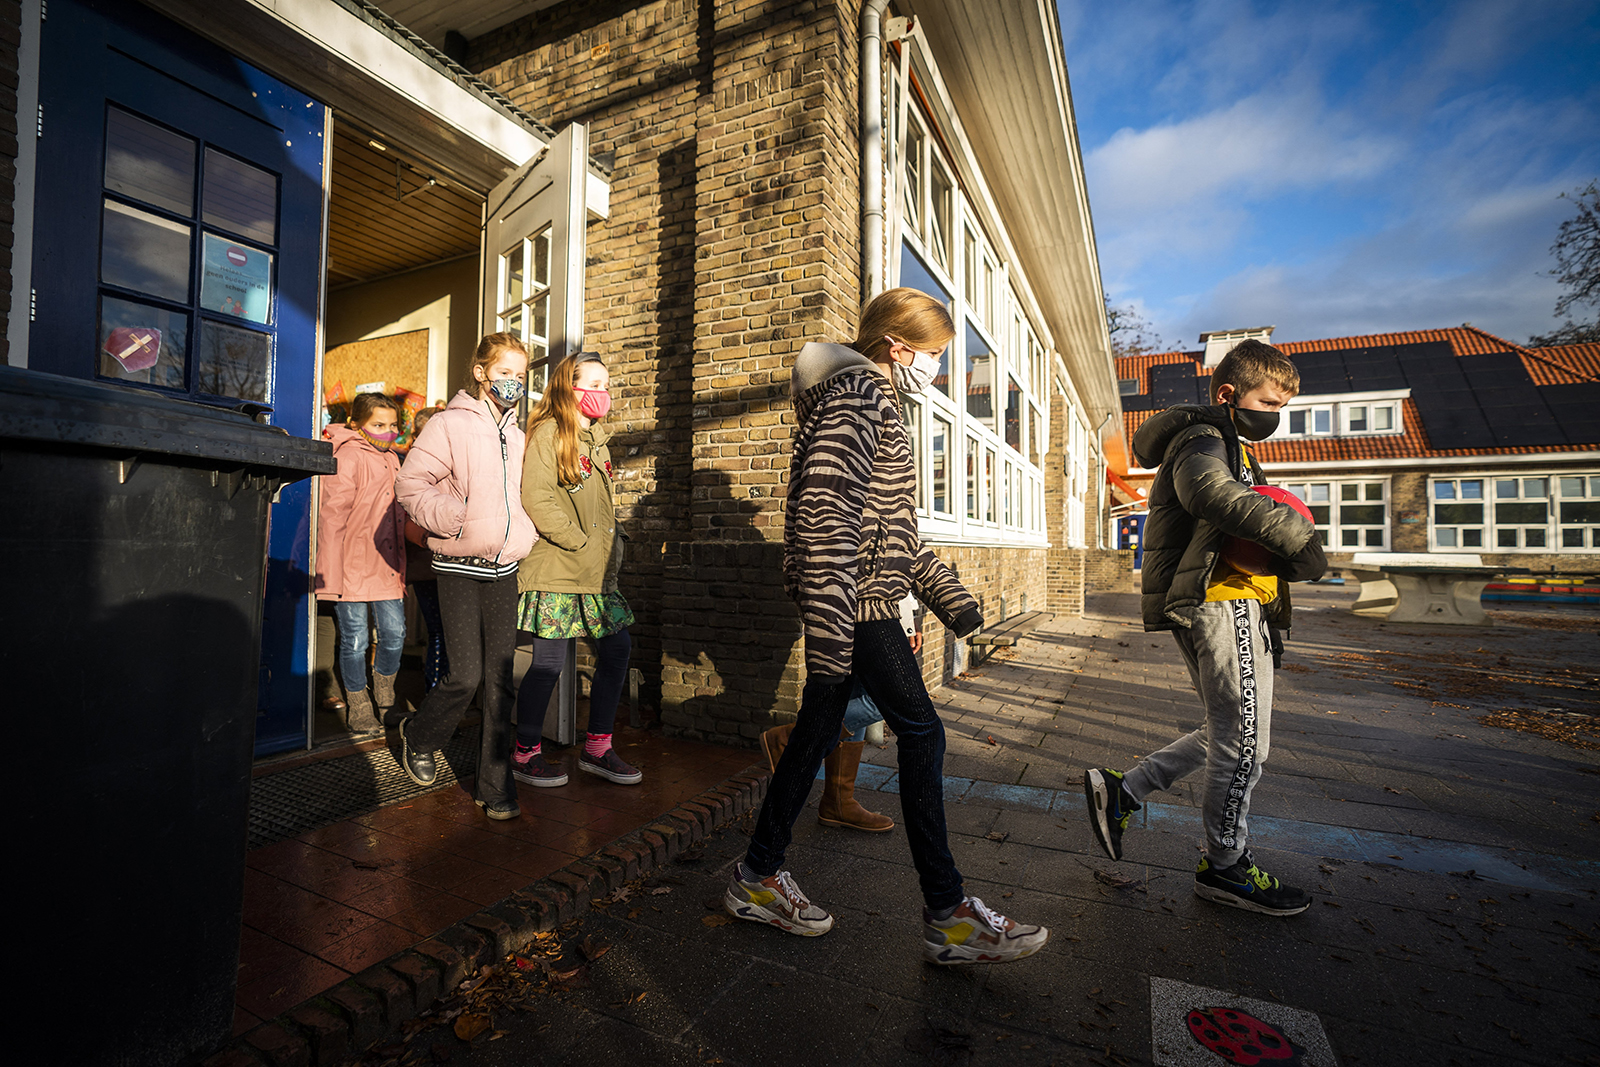 Pupils wearing face masks leave a primary school in de Bilt, on November 29, 2021.